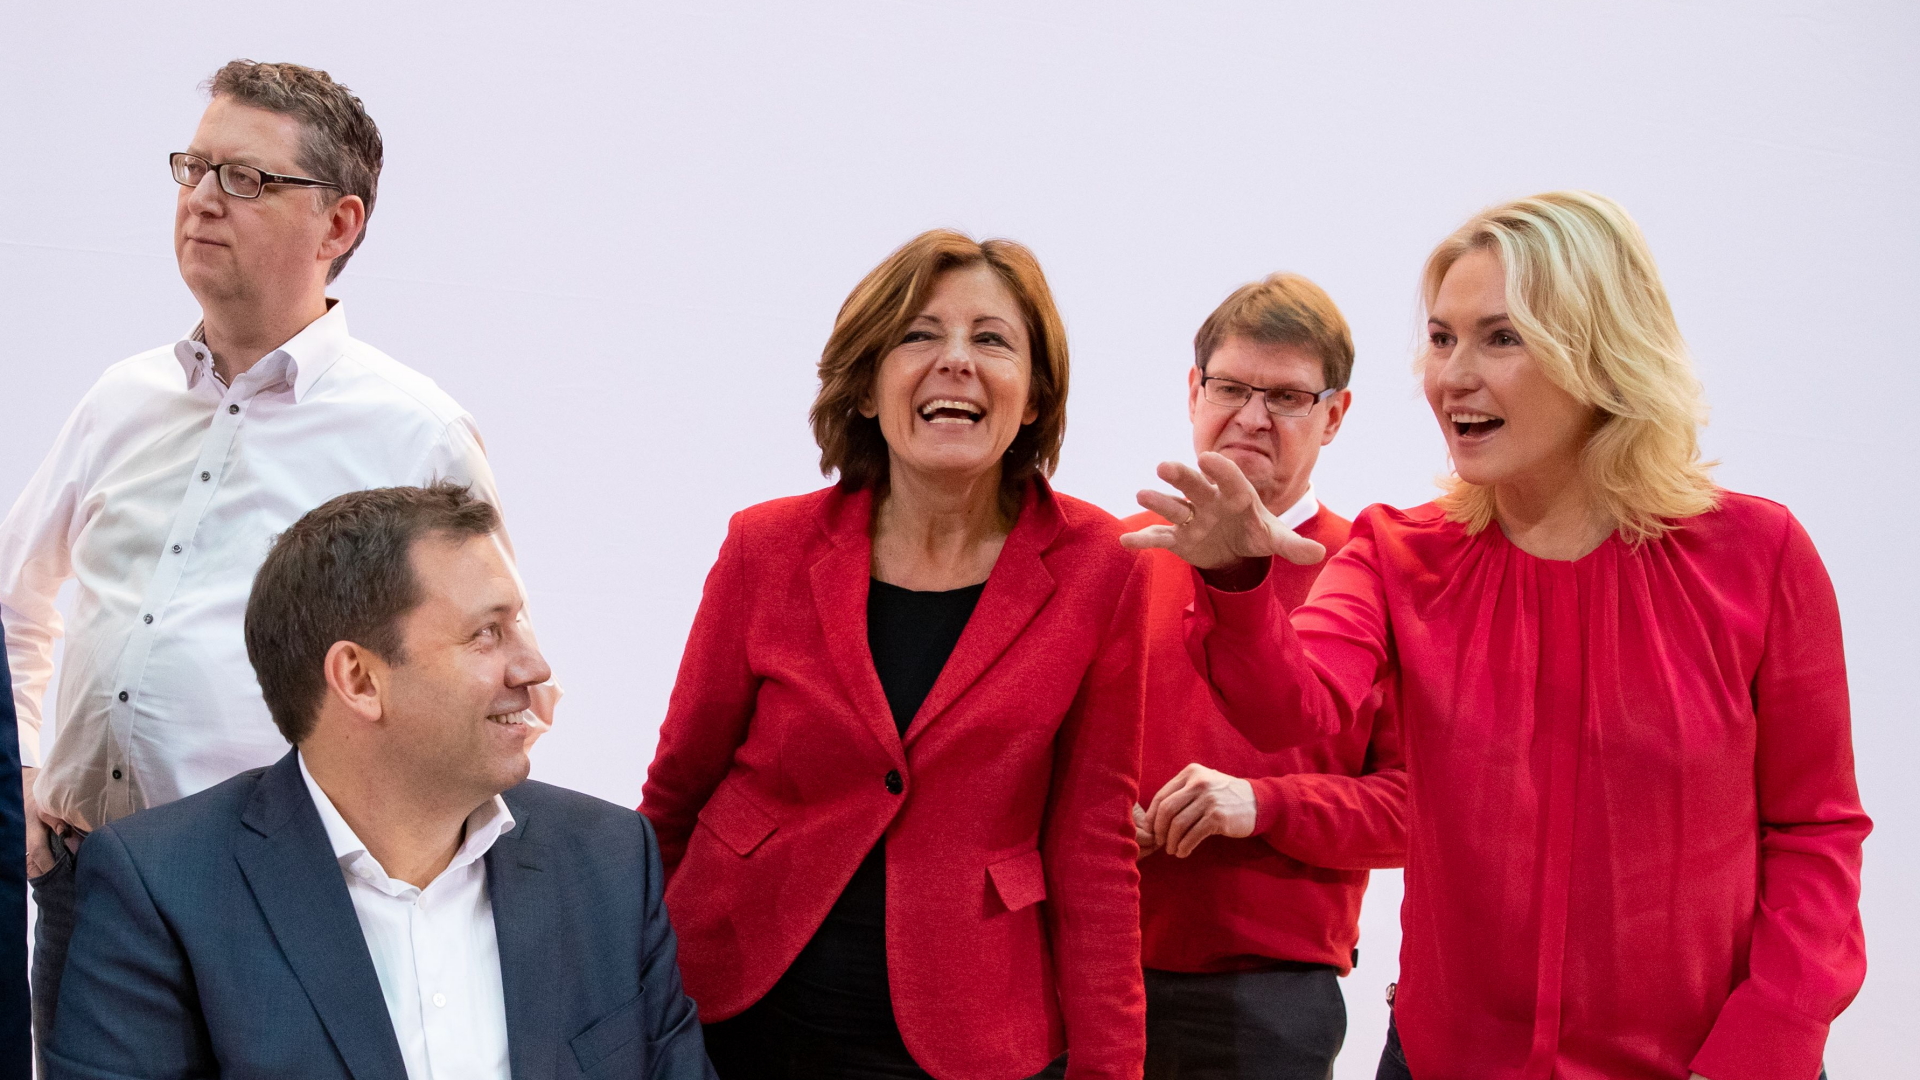 Die SPD-Politiker Schäfer-Gümbel, Klingbeil, Dreyer, Stegner und Schwesig (von links nach rechts) | HAYOUNG JEON/EPA-EFE/REX